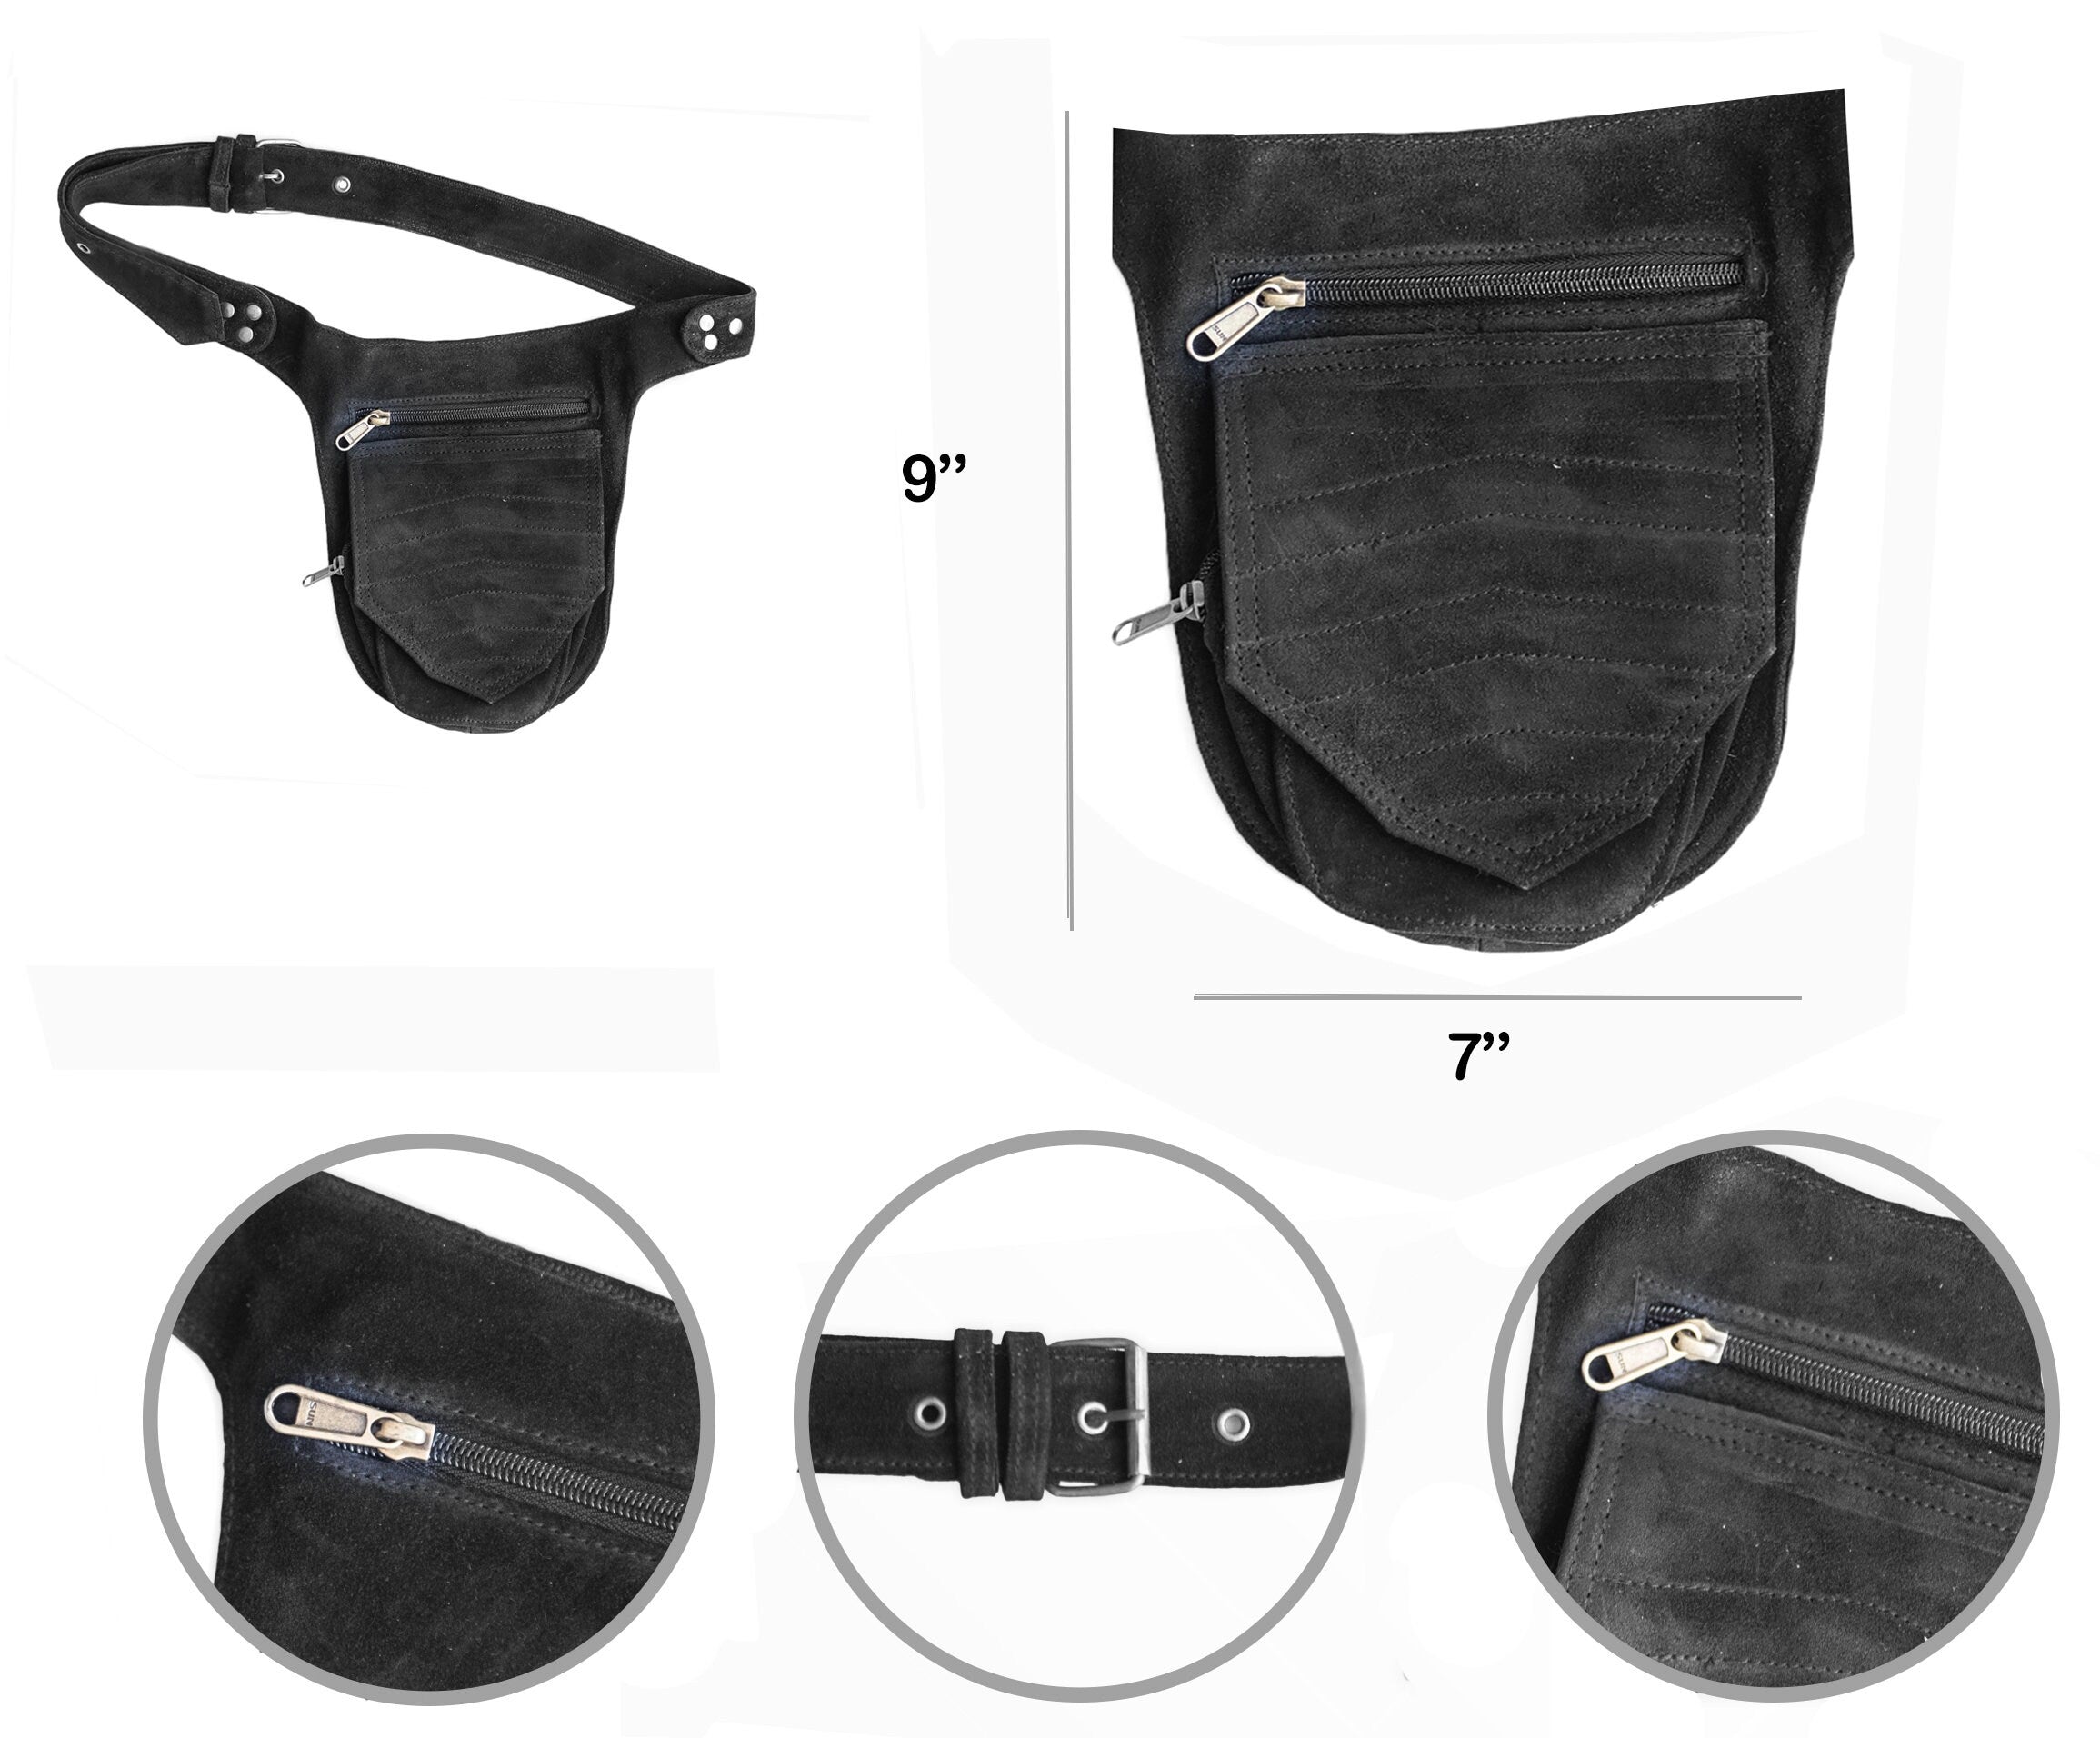 Unisex Leather Festival Pocket Belt | Black Suede | travel belt, fanny pack, vendor belt, sport bag, burning man, playa wear, dog walker bag